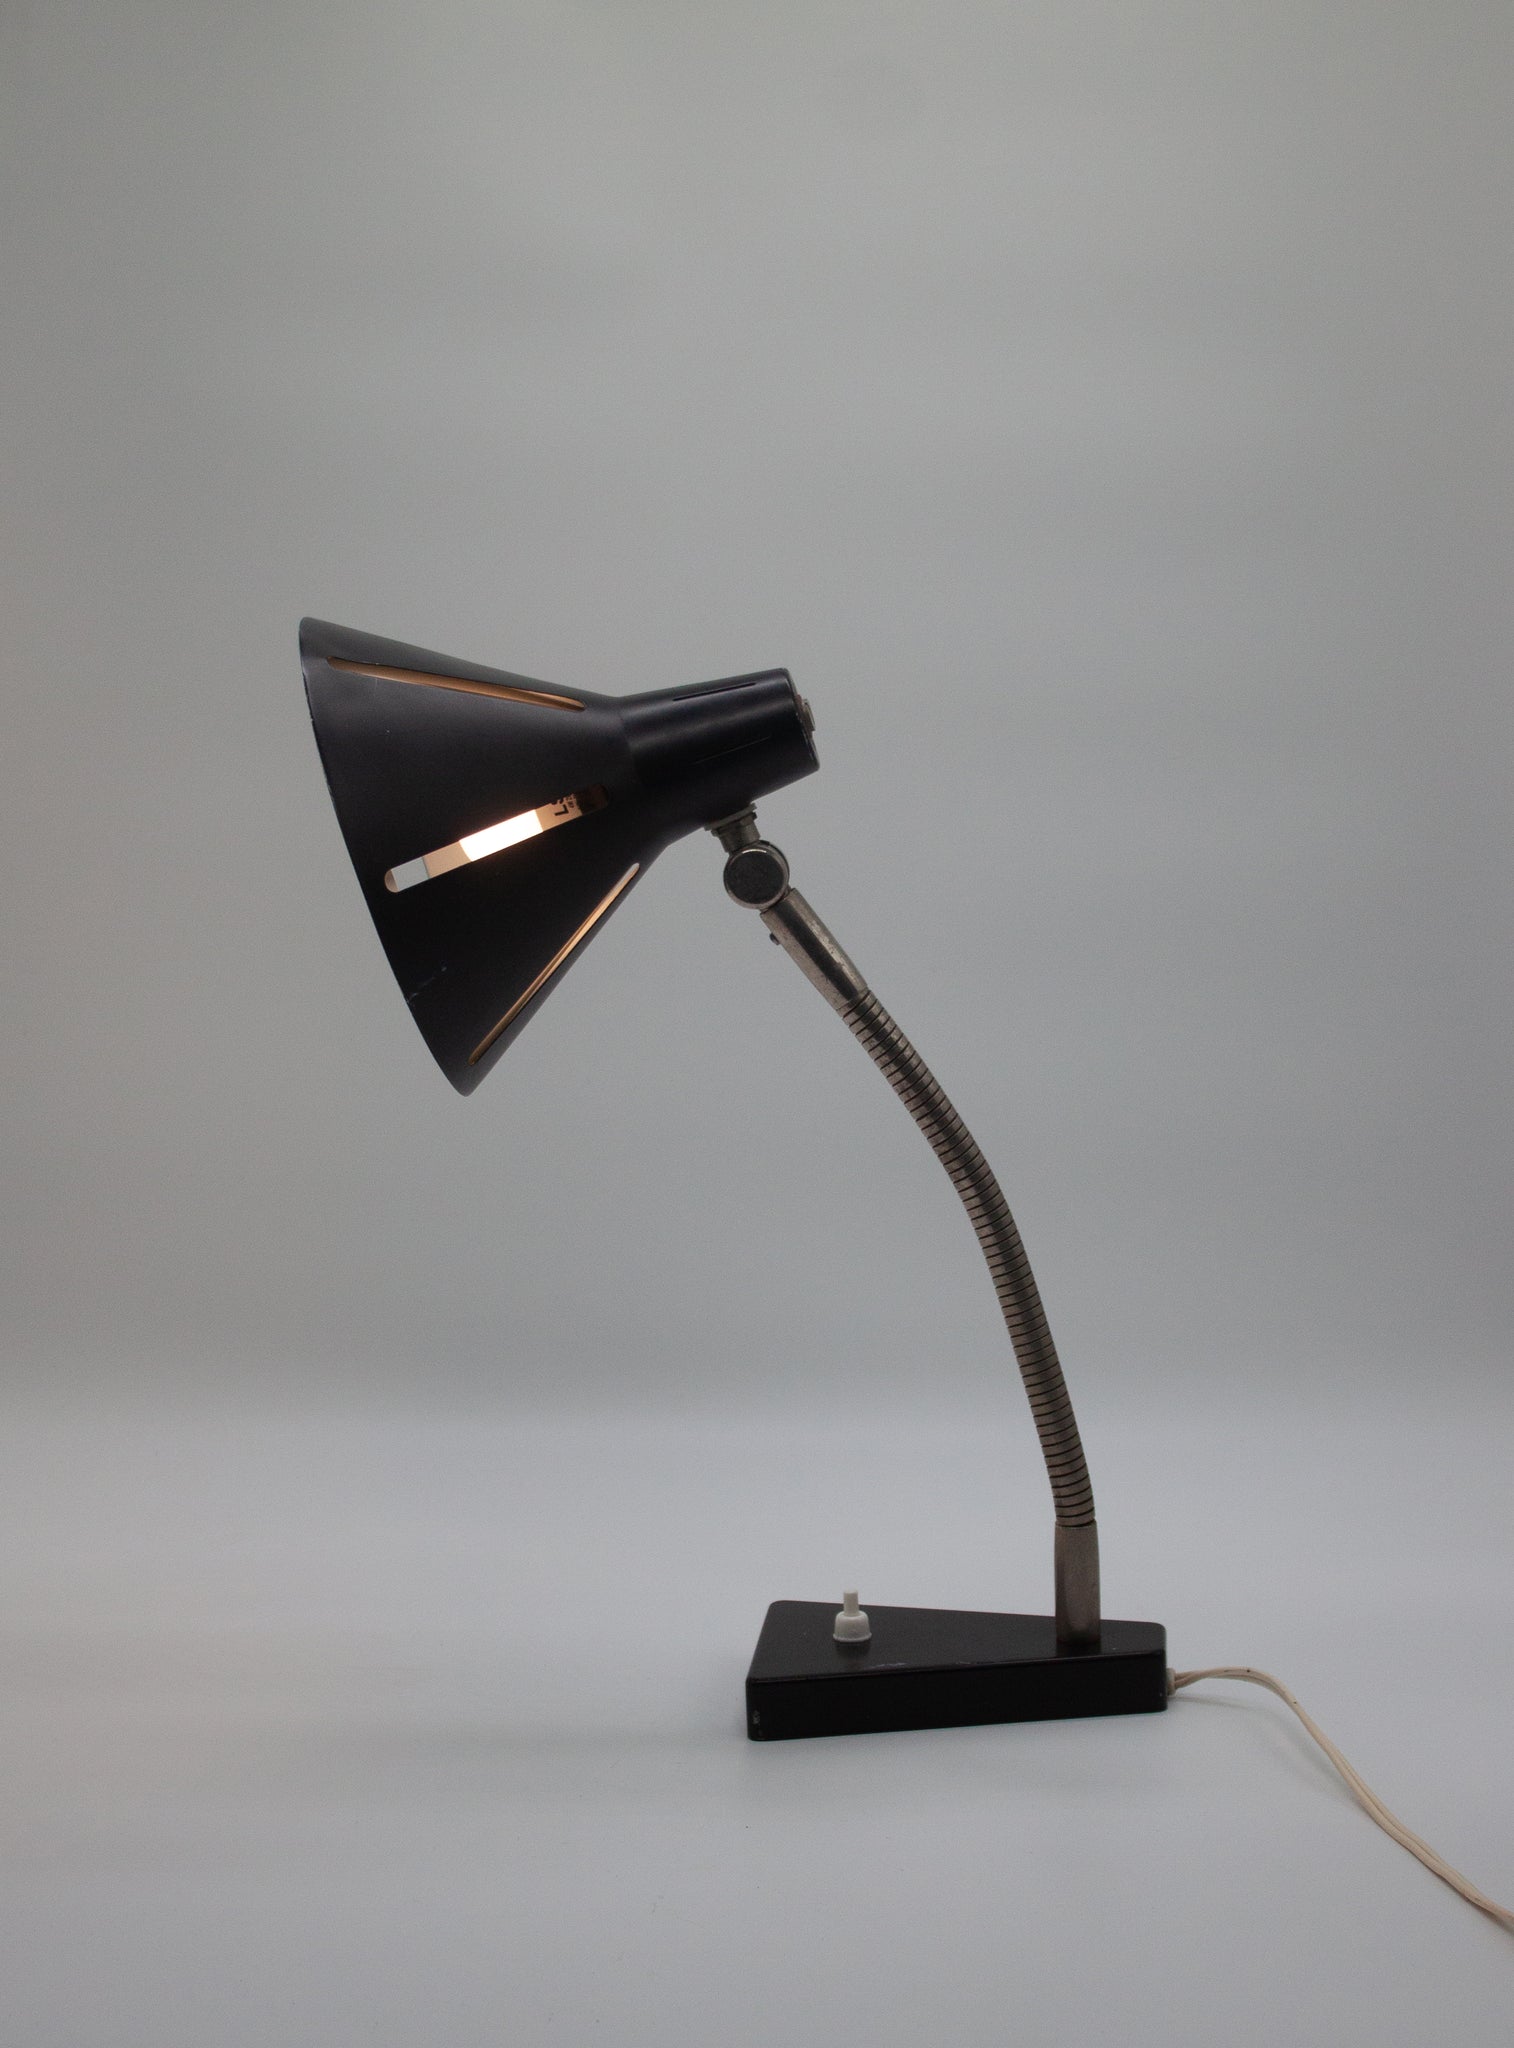 Hala 'Zonneserie' Desk Lamp by H. Busquet (Black)